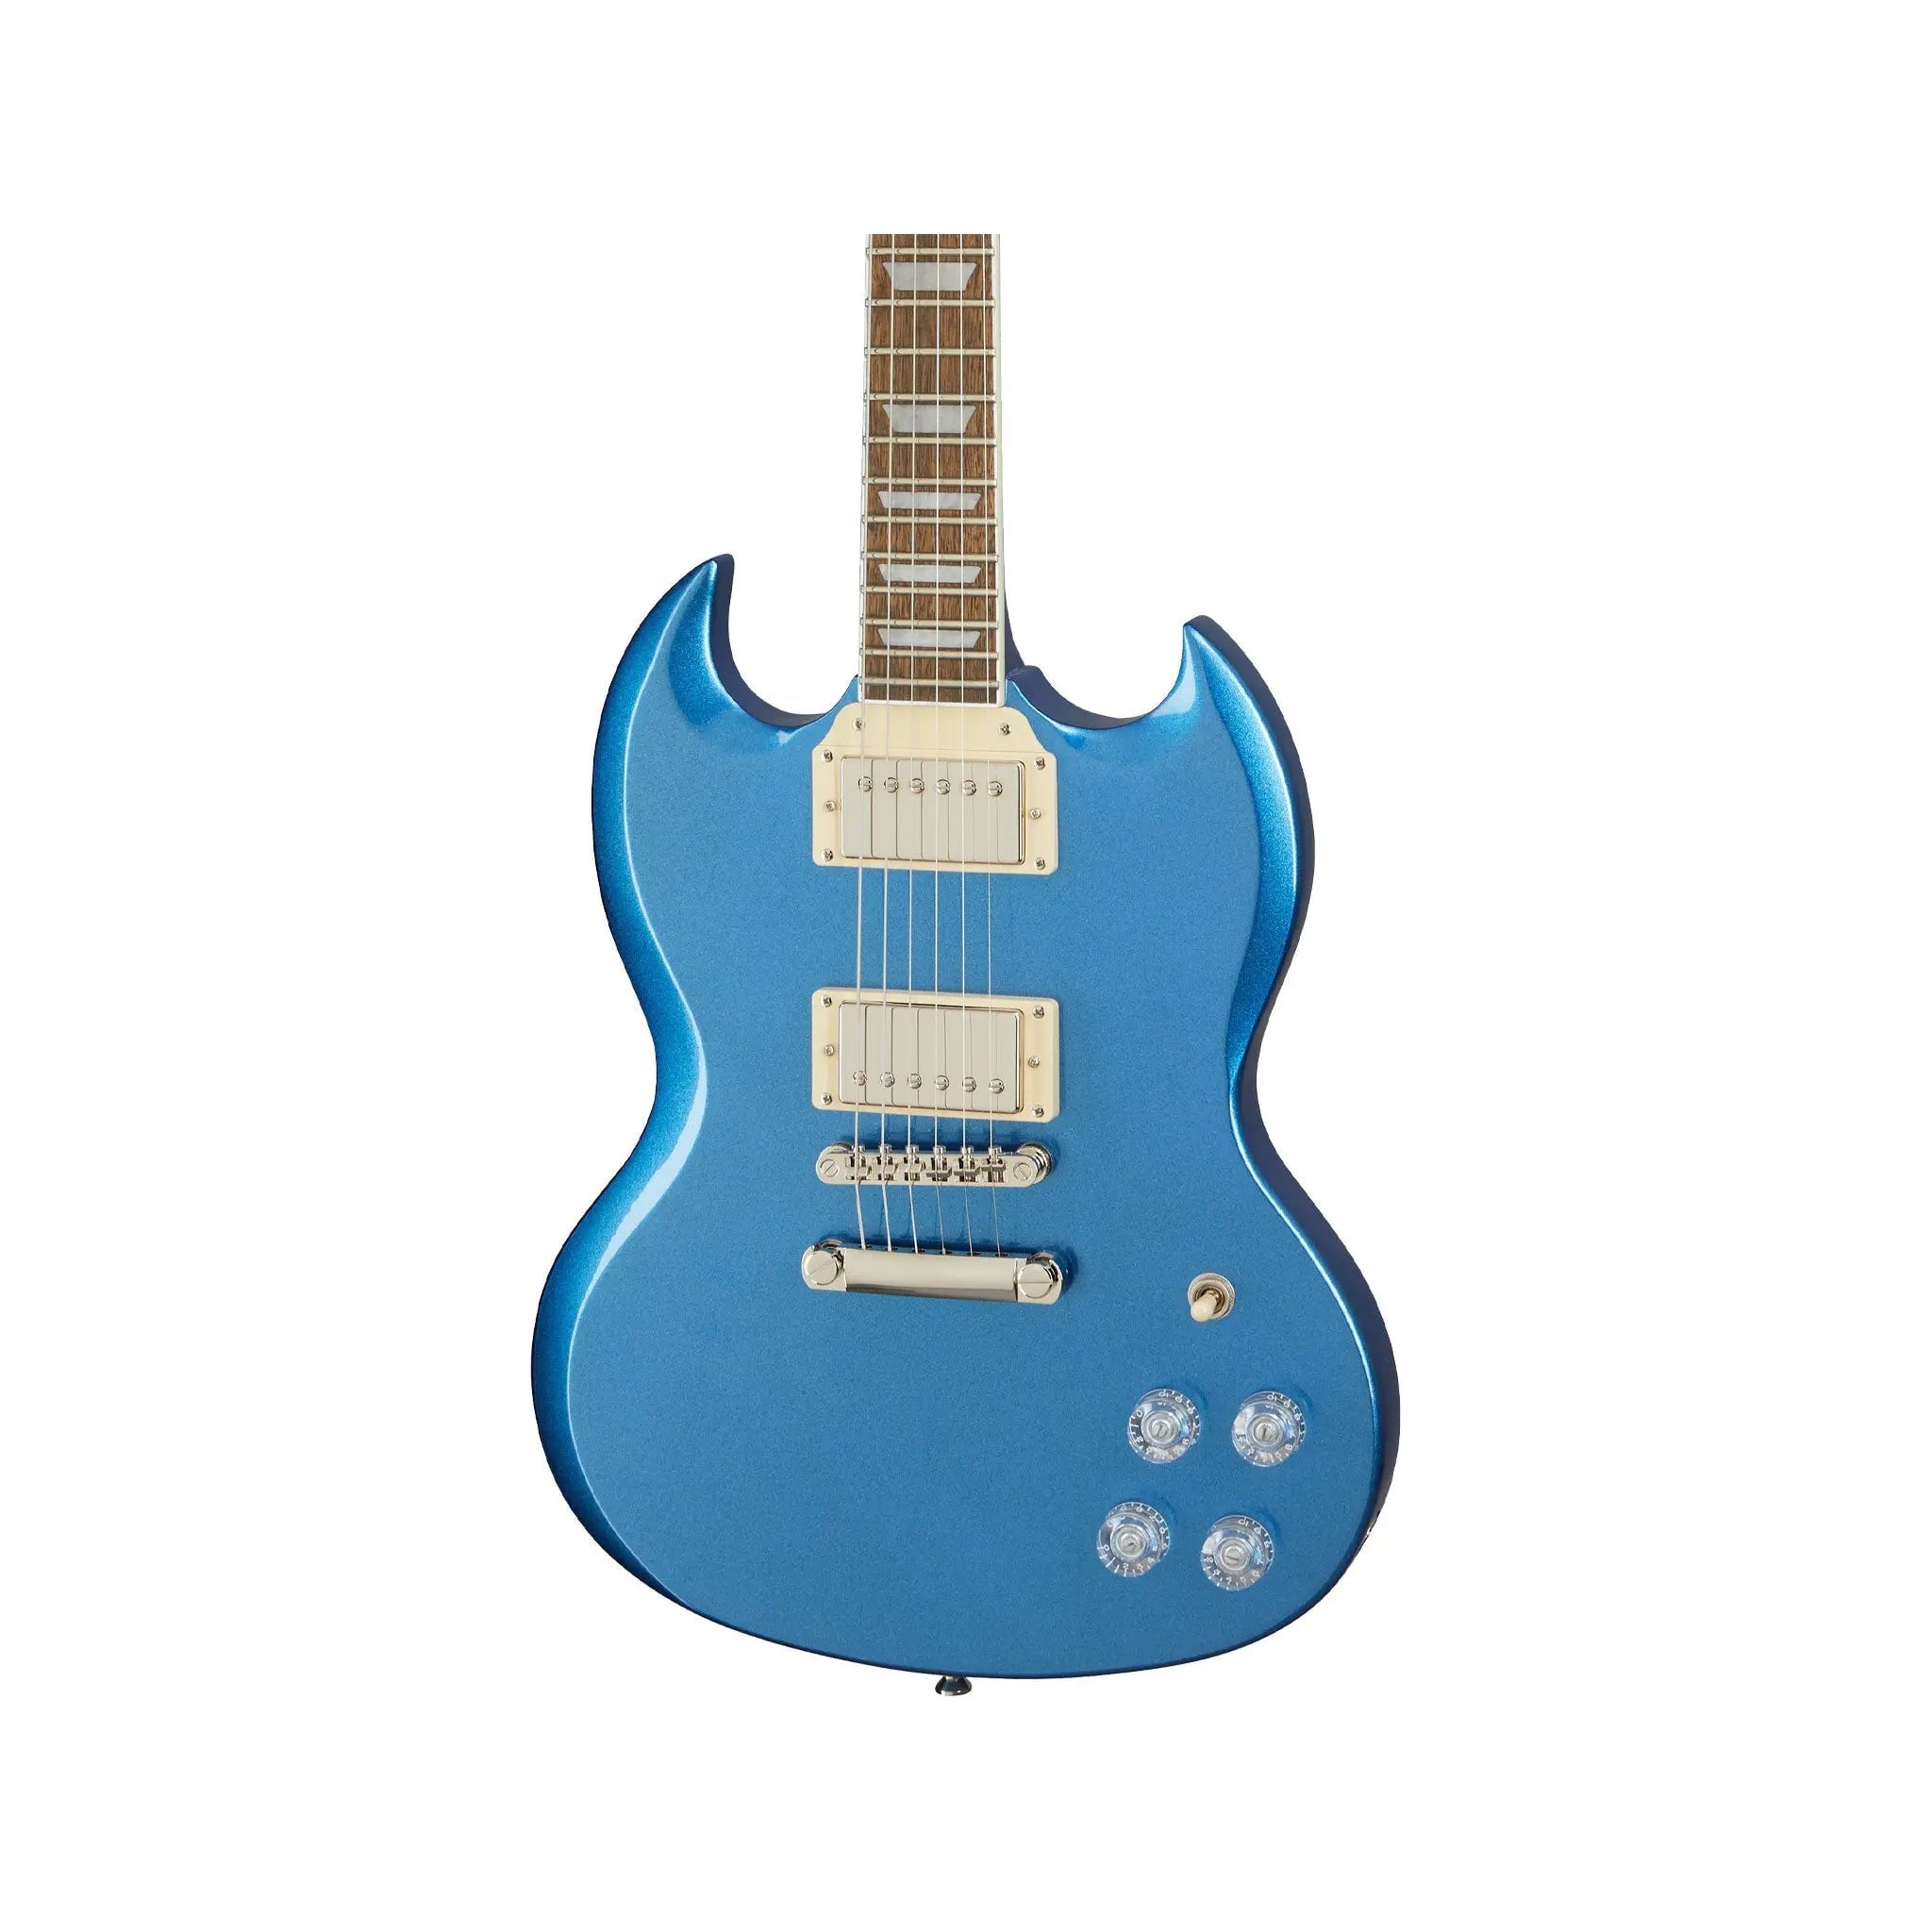 Epiphone SG Muse Radio Blue Metallic Electric Guitars Epiphone Art of Guitar